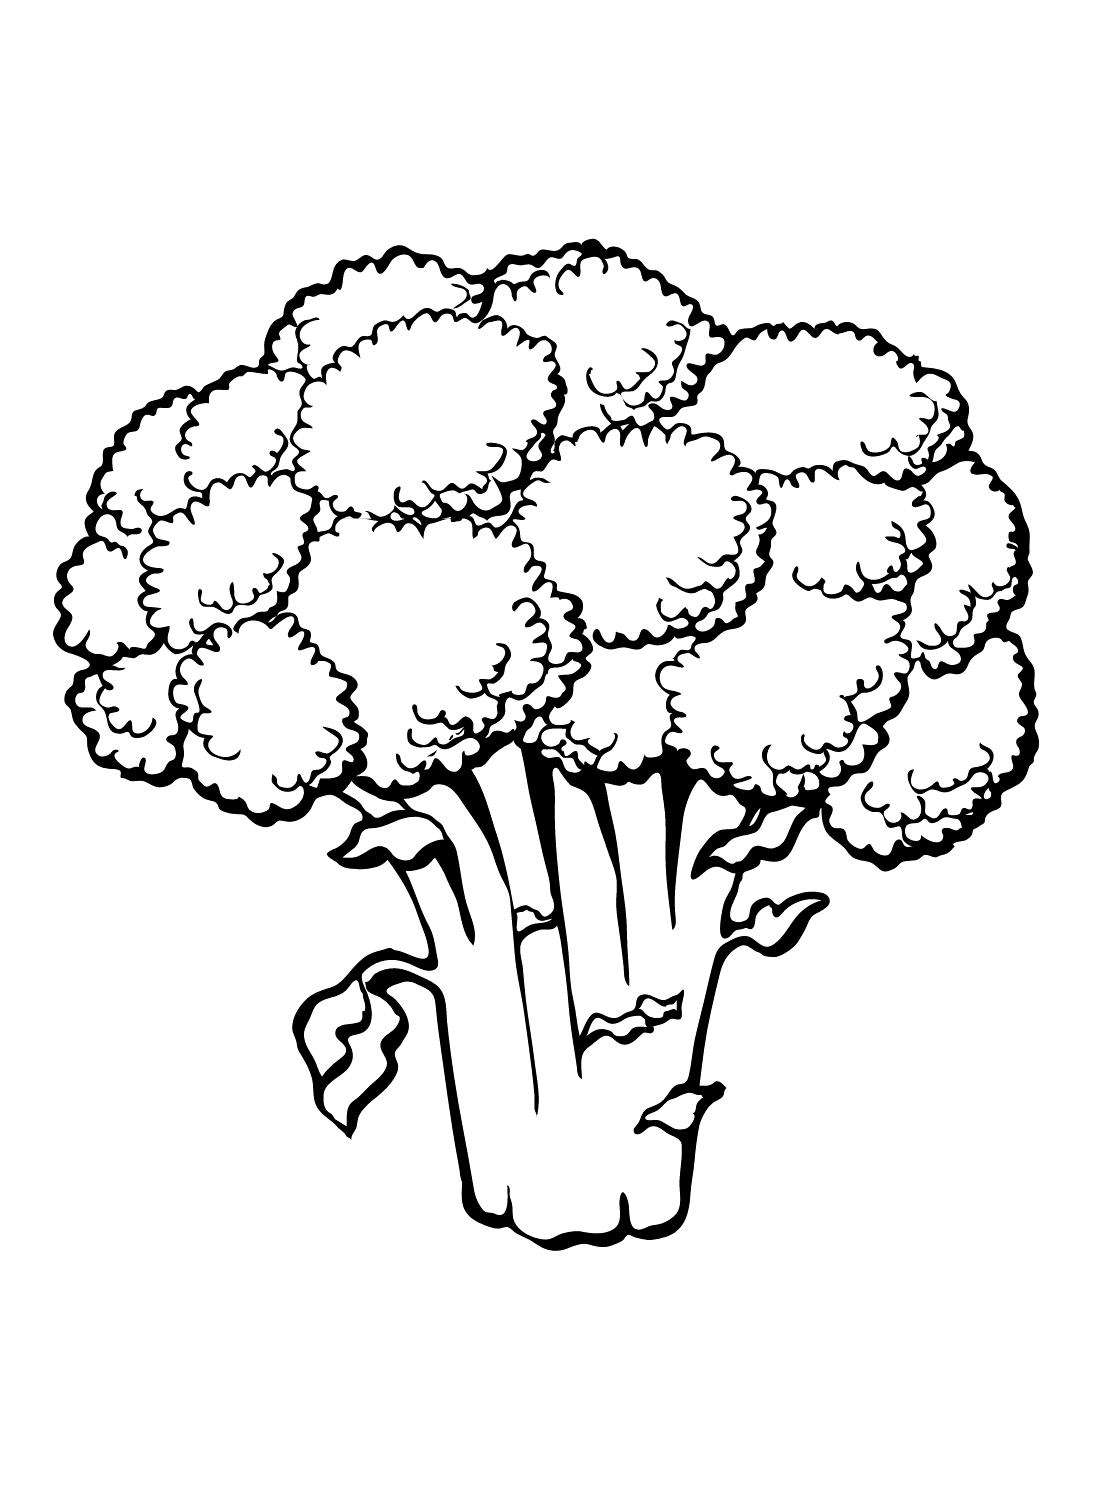 Broccoli verdi Immagini da Broccoli